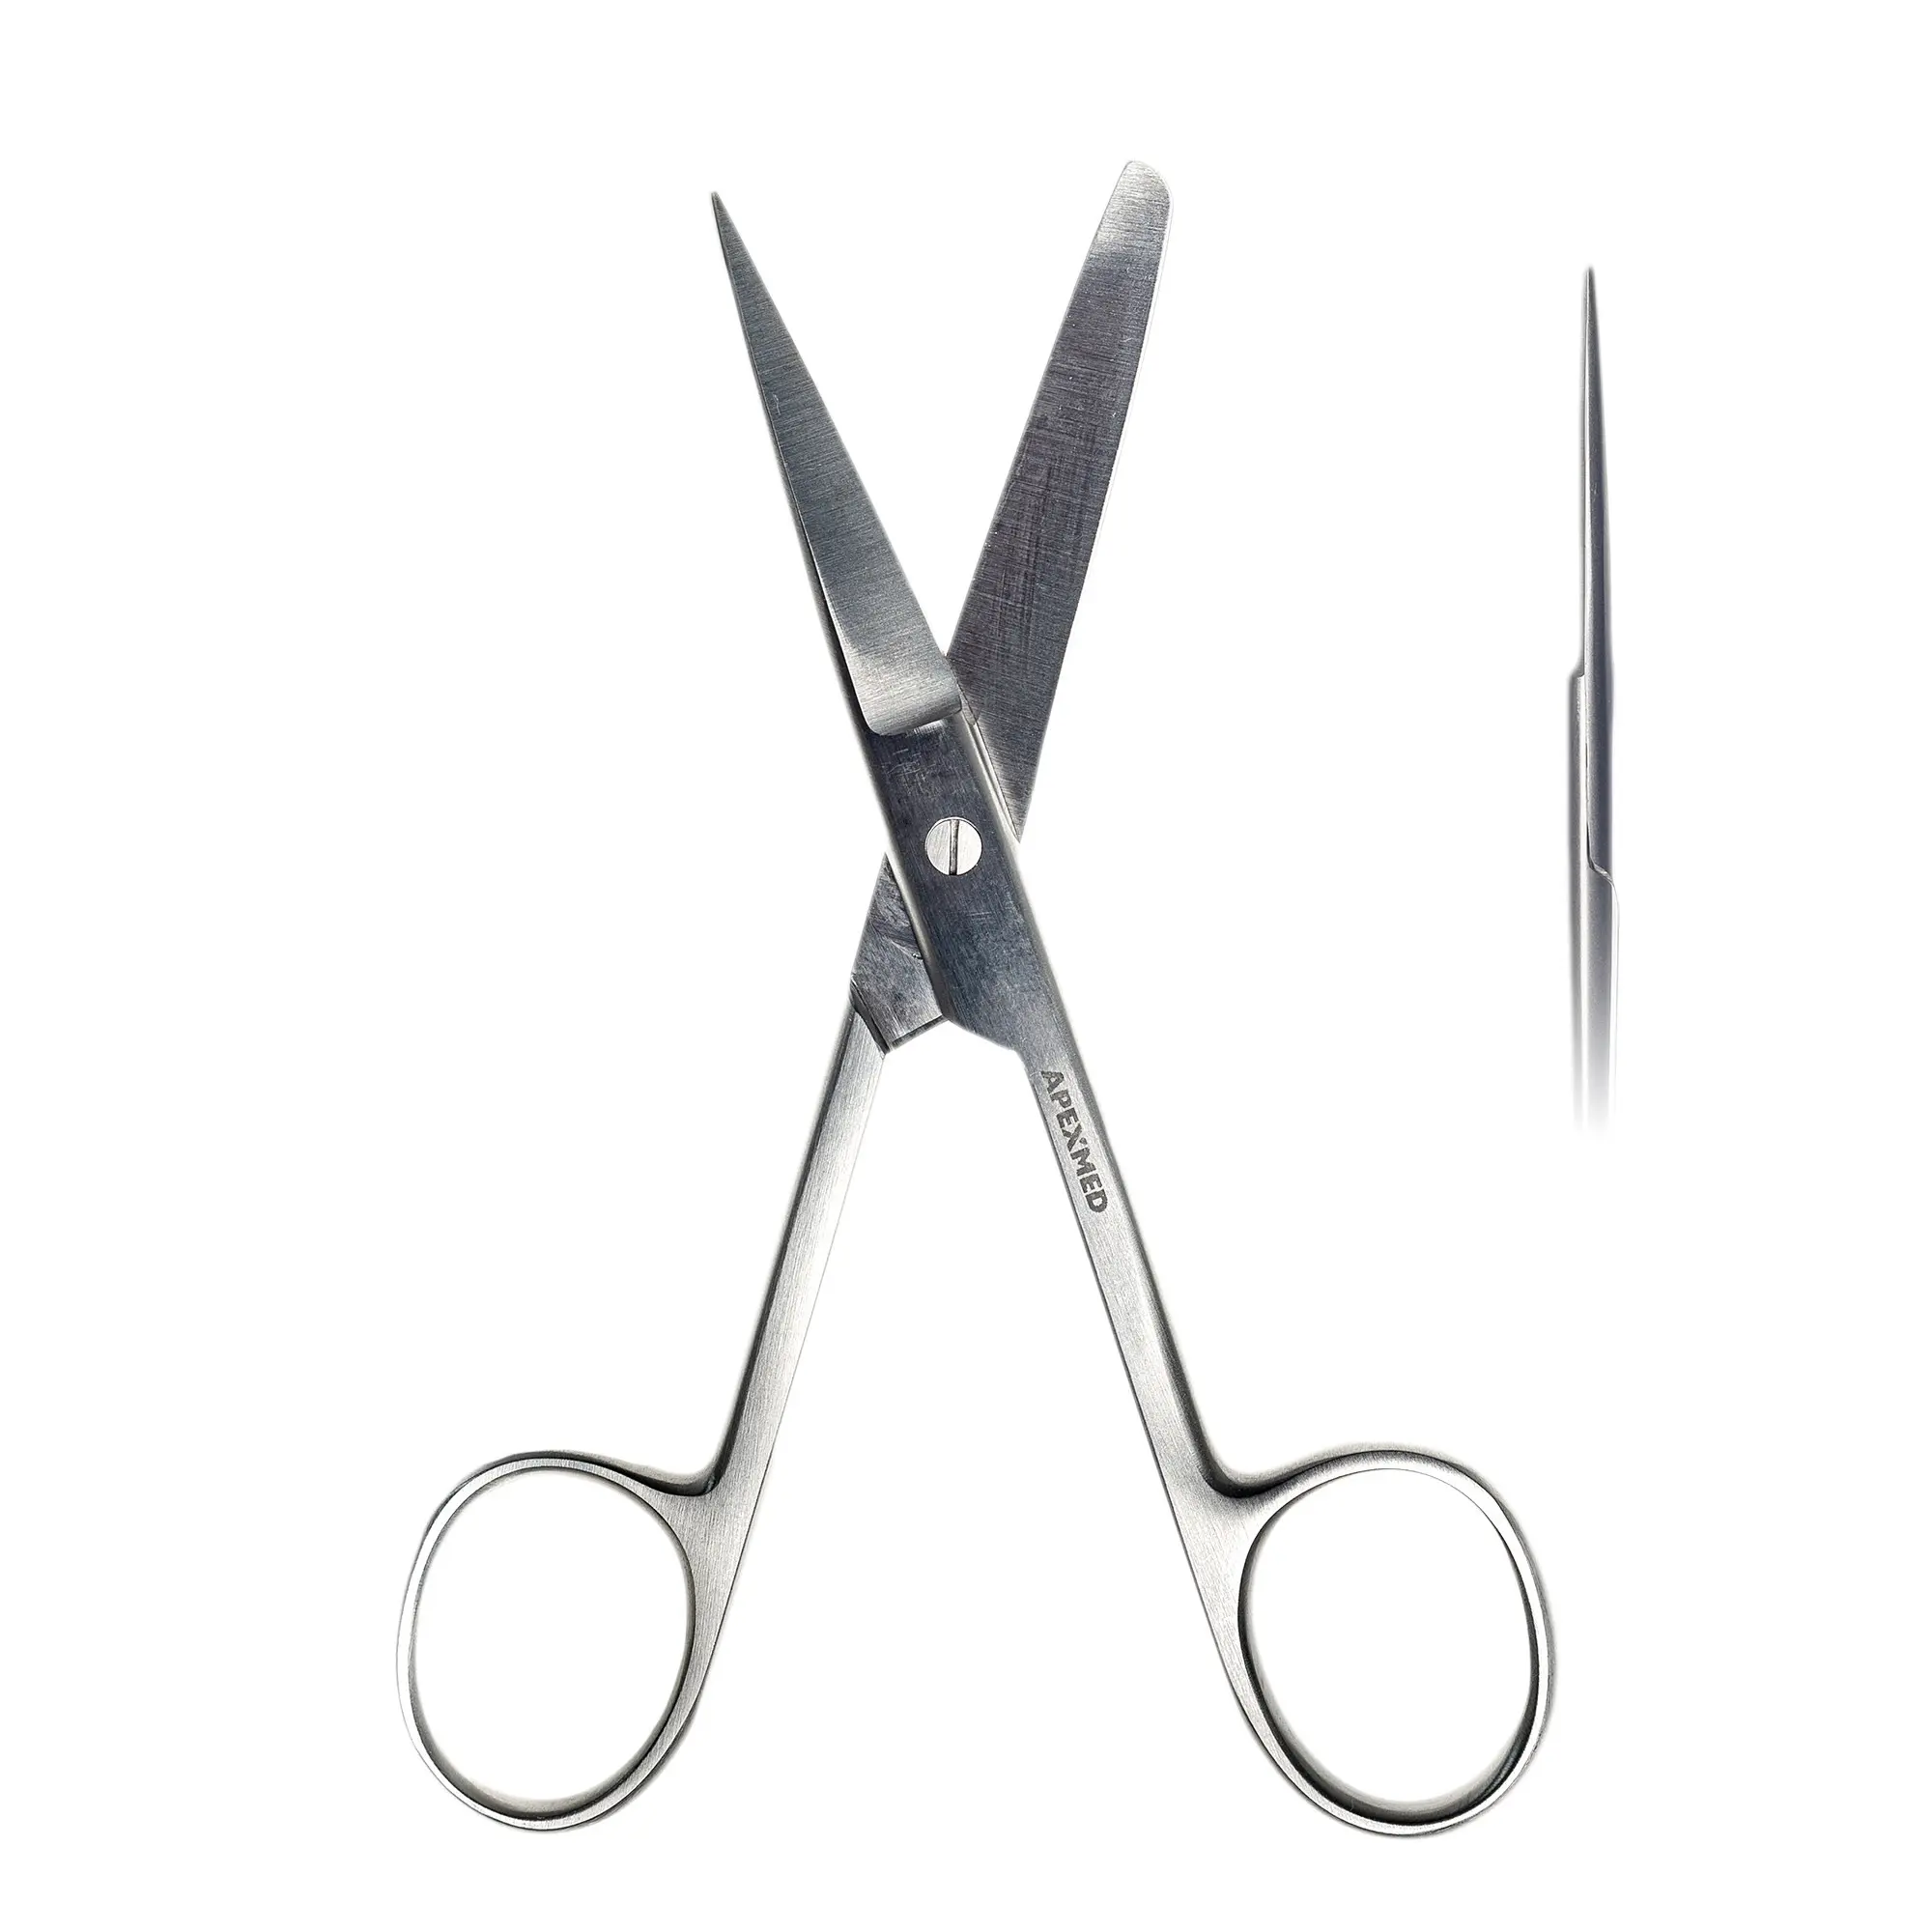 Ножницы хирургические Standard (Стандарт) с одним острым концом, прямые, детские,130 мм, Apexmed